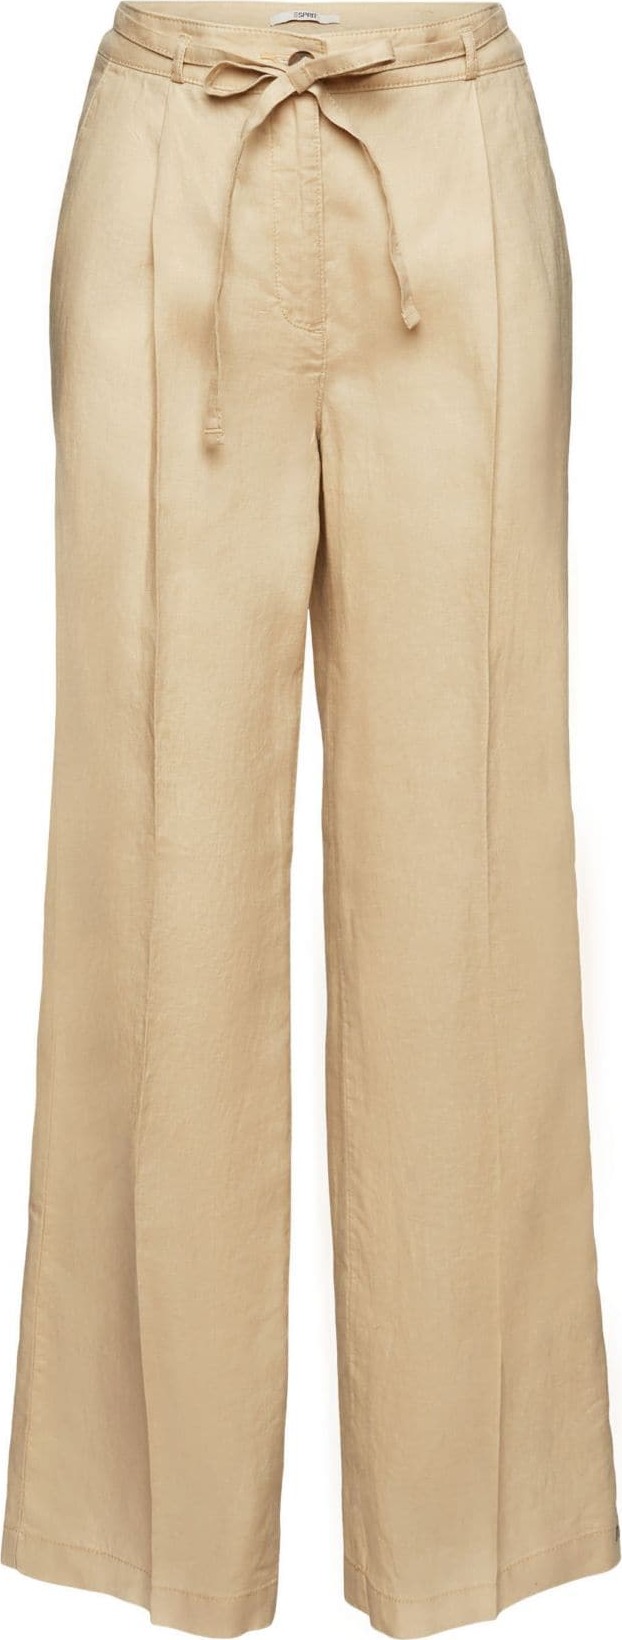 Kalhoty s puky Esprit velbloudí